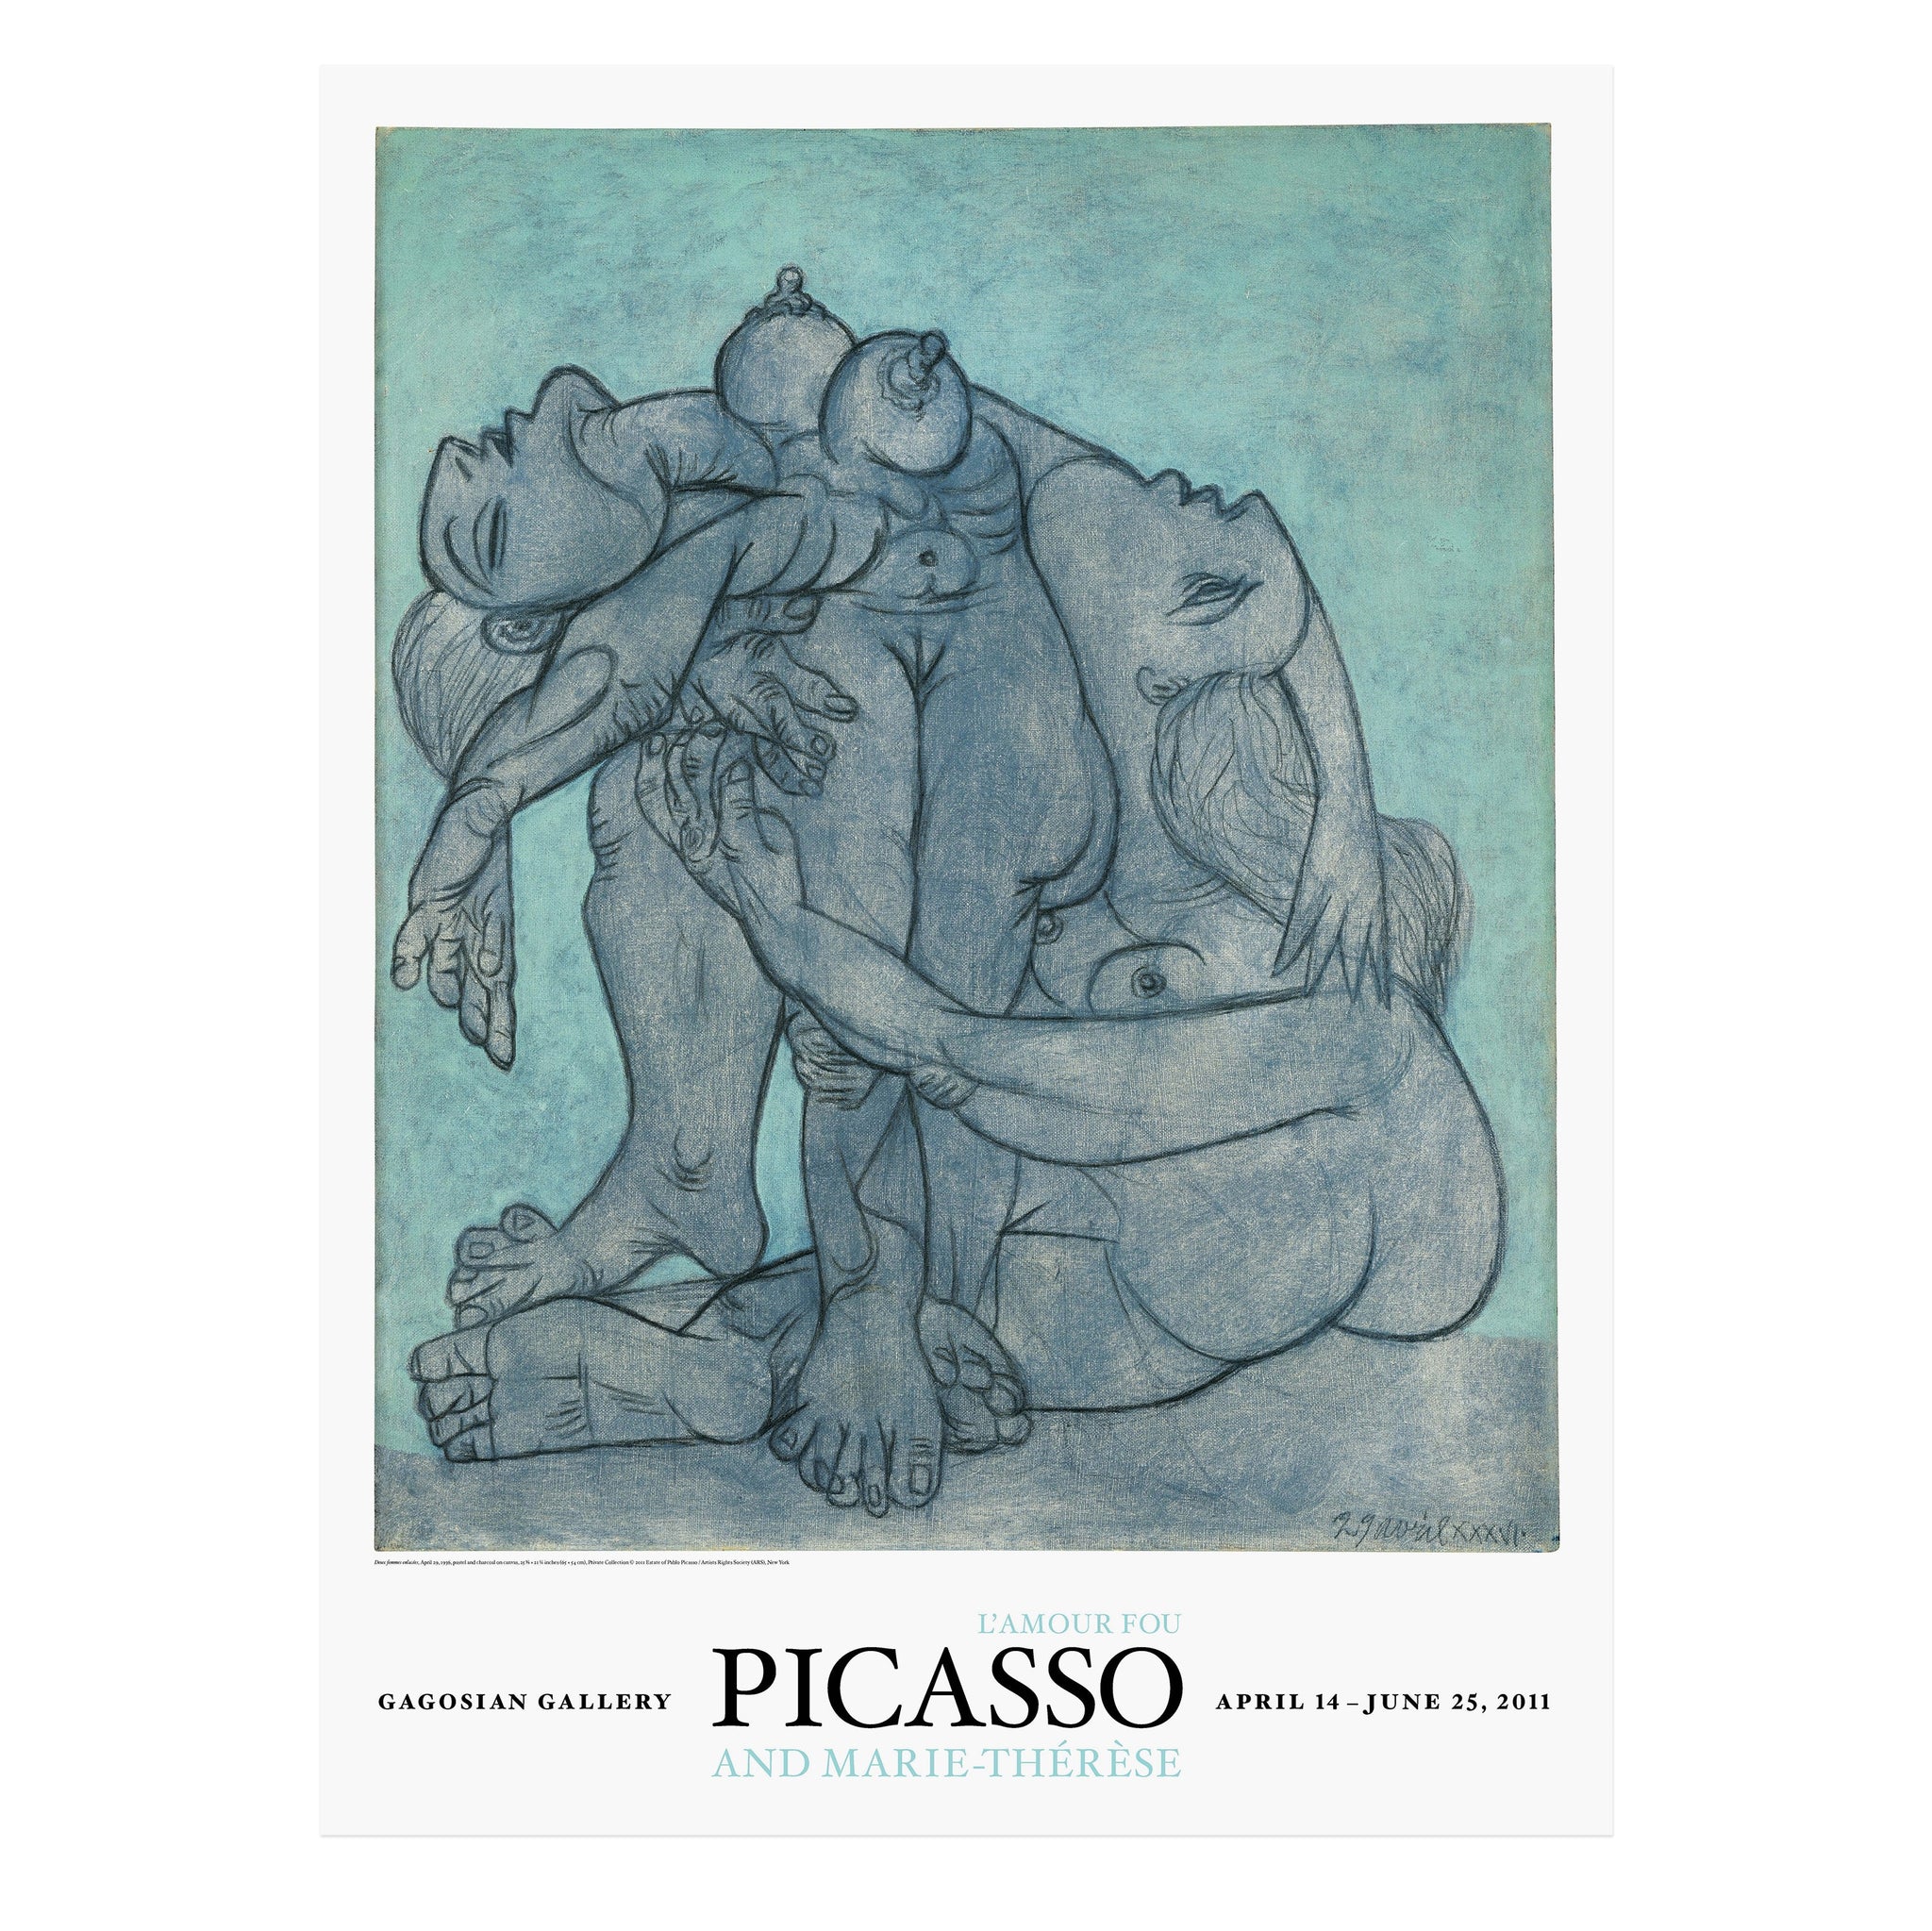 Picasso and Marie-Thérèse: L’amour fou poster featuring Deux femmes enlacées (1936)